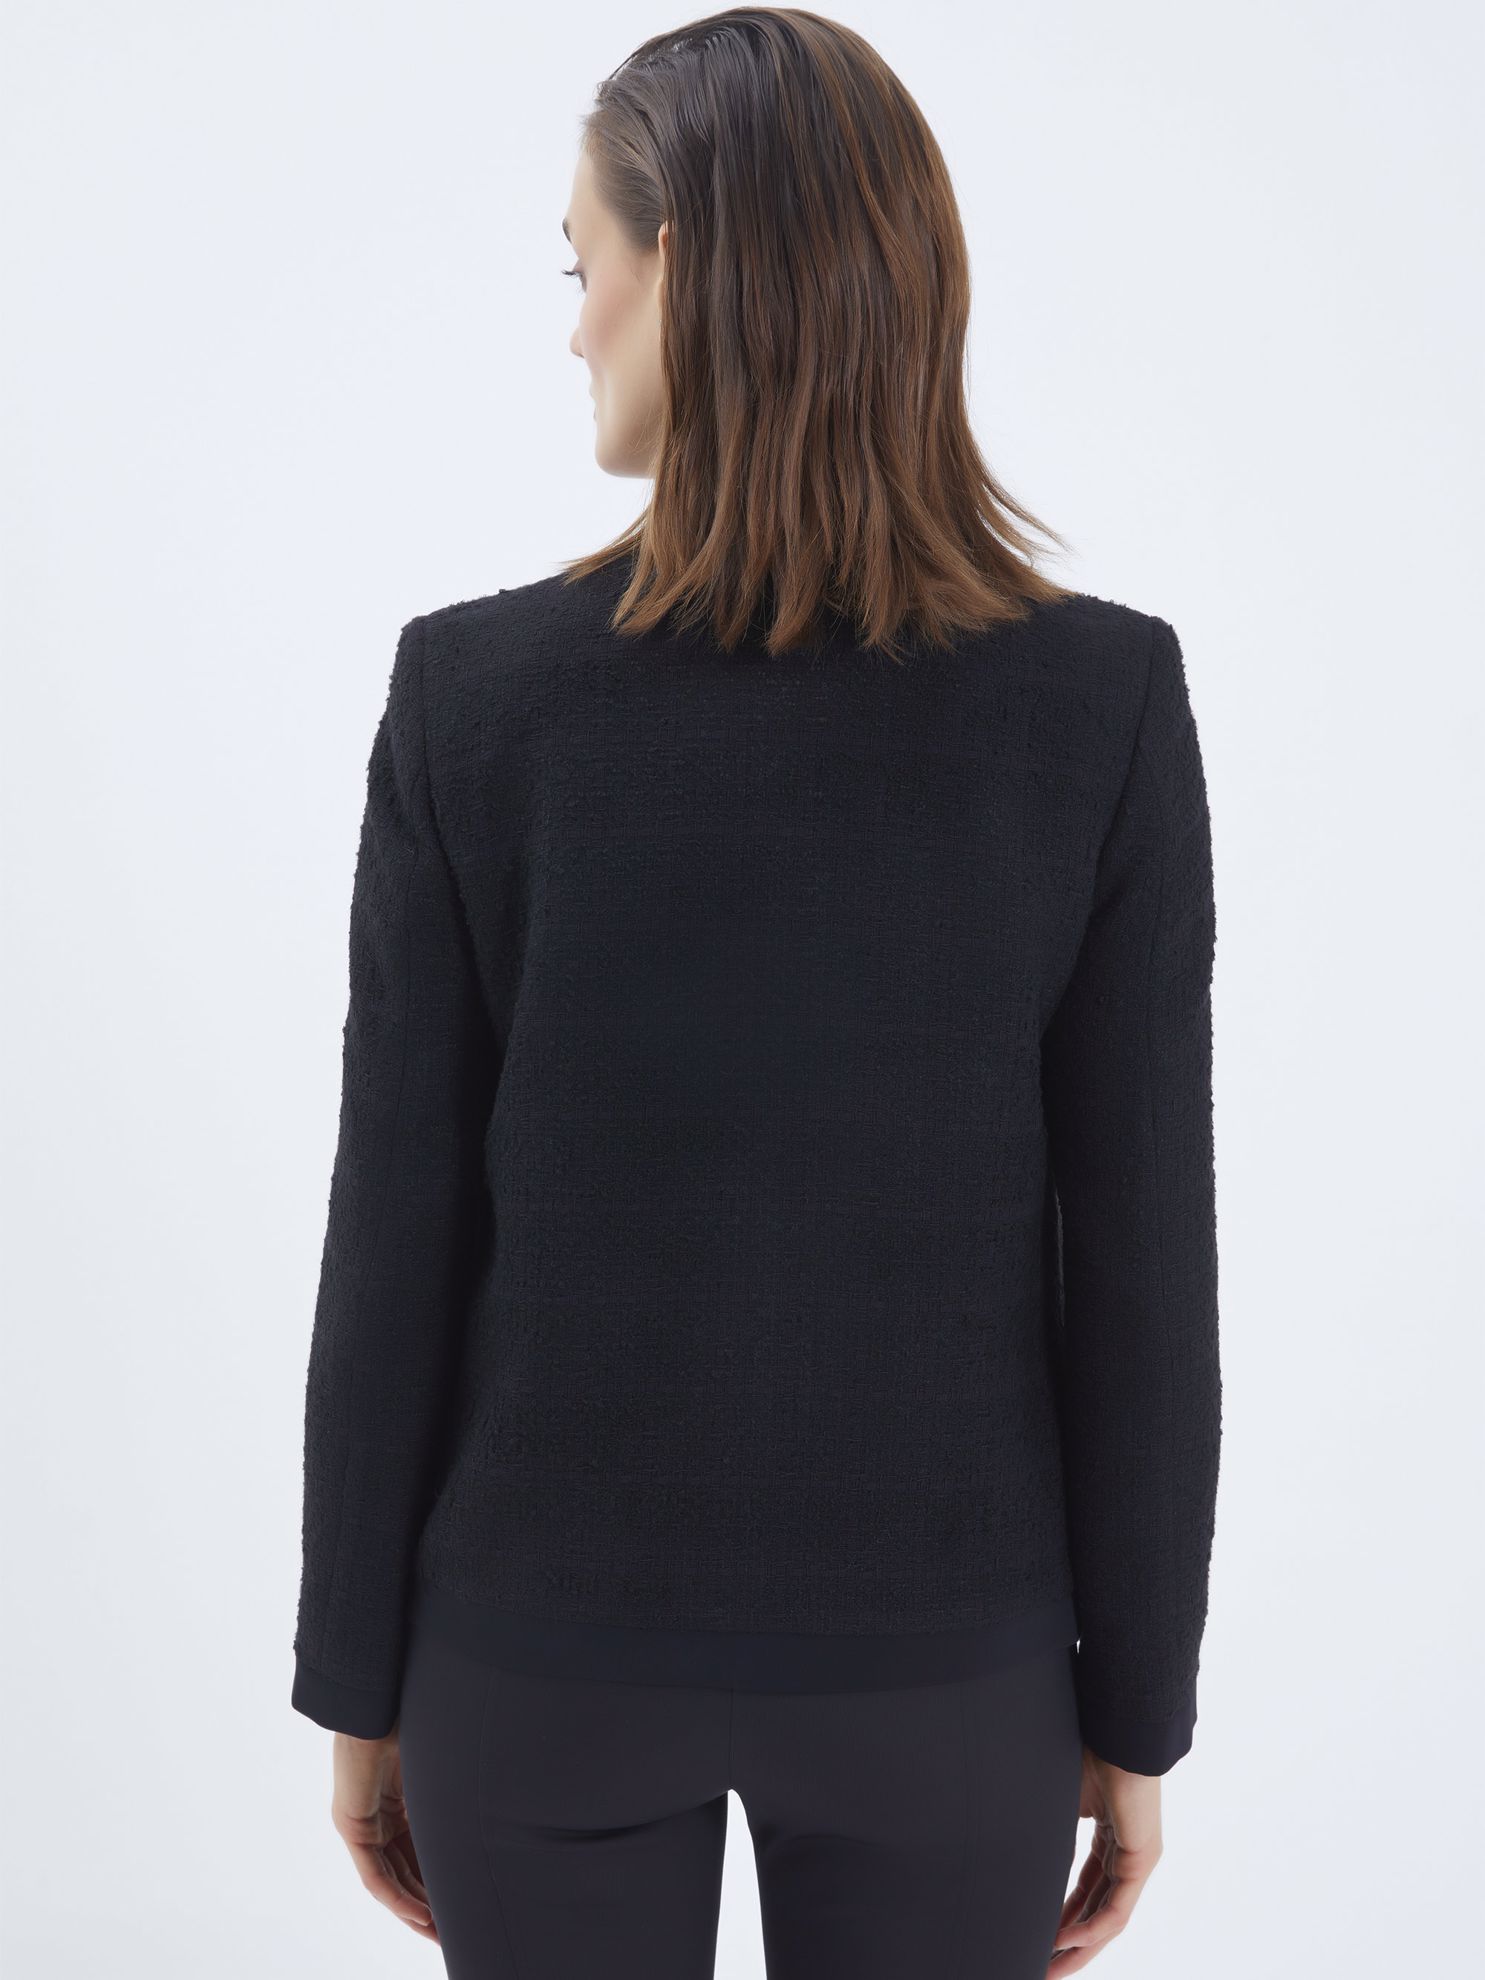 Karaca Kadın Ceket-Siyah. ürün görseli